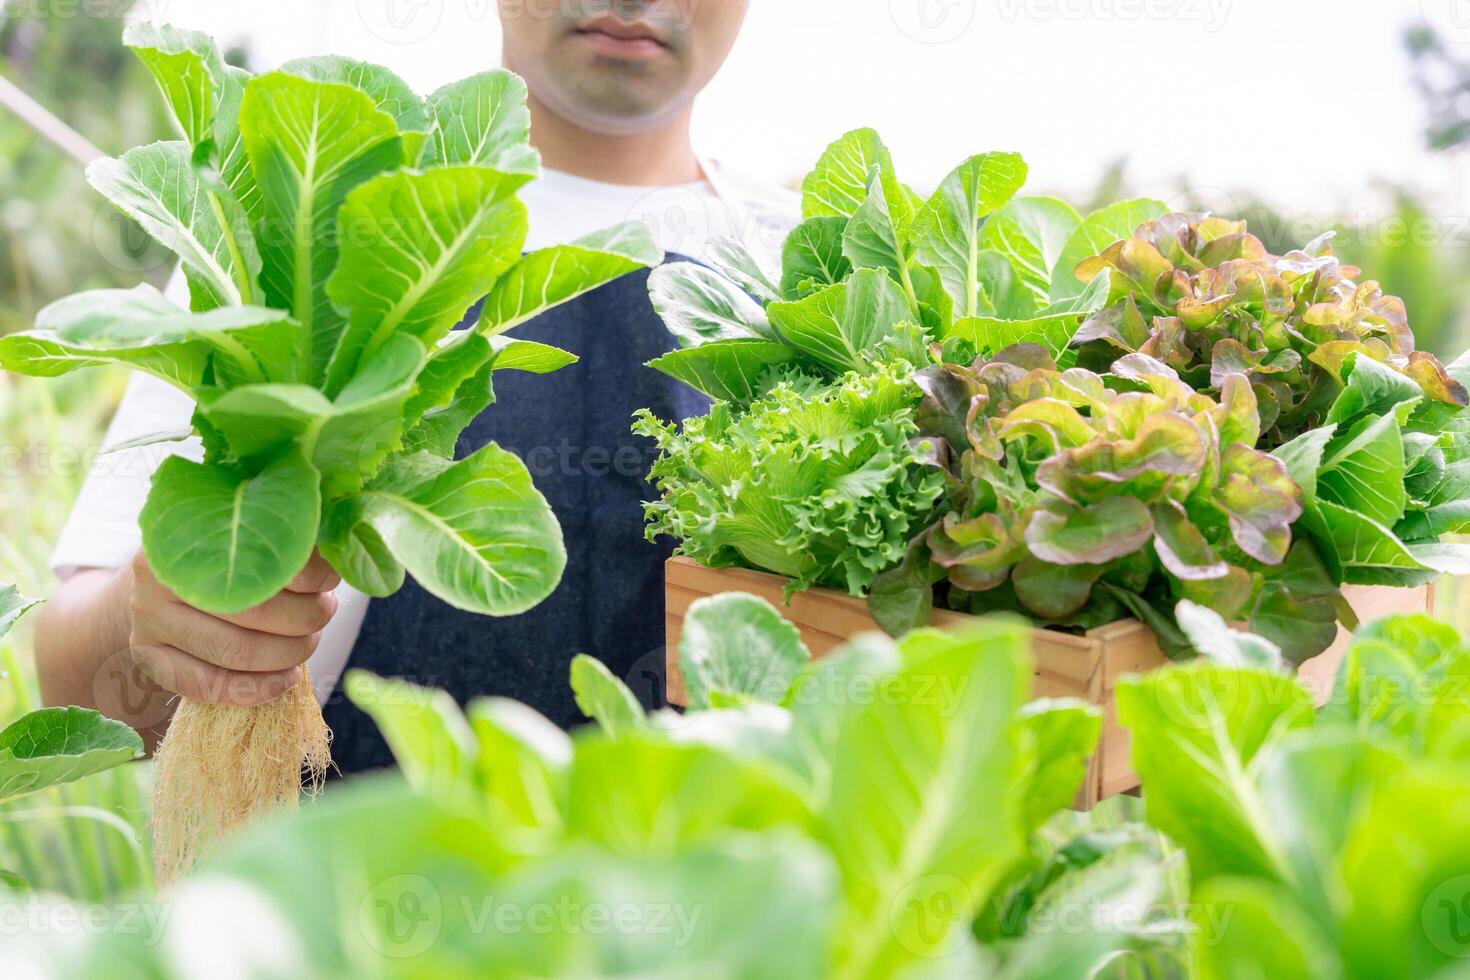 organisk jordbruk, sallad odla. jordbrukare skörda sallad grönsaker in i trä- lådor i regnig. hydroponik vegetabiliska växa naturligtvis. växthus trädgård, ekologisk biologisk, friska, vegetarian, ekologi foto